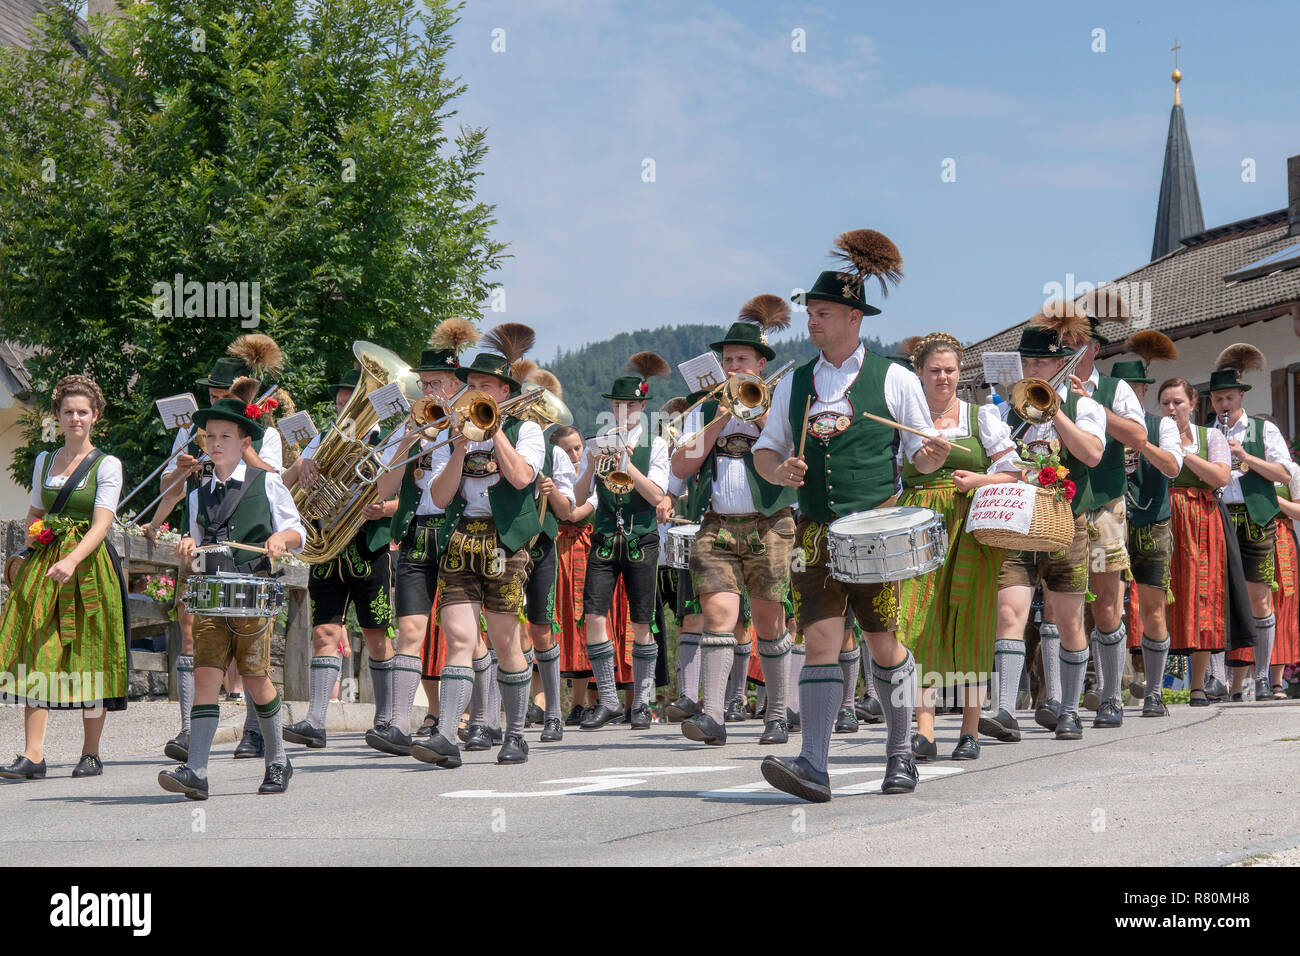 Traditionelle bayerische Brass Band marschieren. Berchtesgadener Land, altsalzburger, Oberbayern, Deutschland Stockfoto